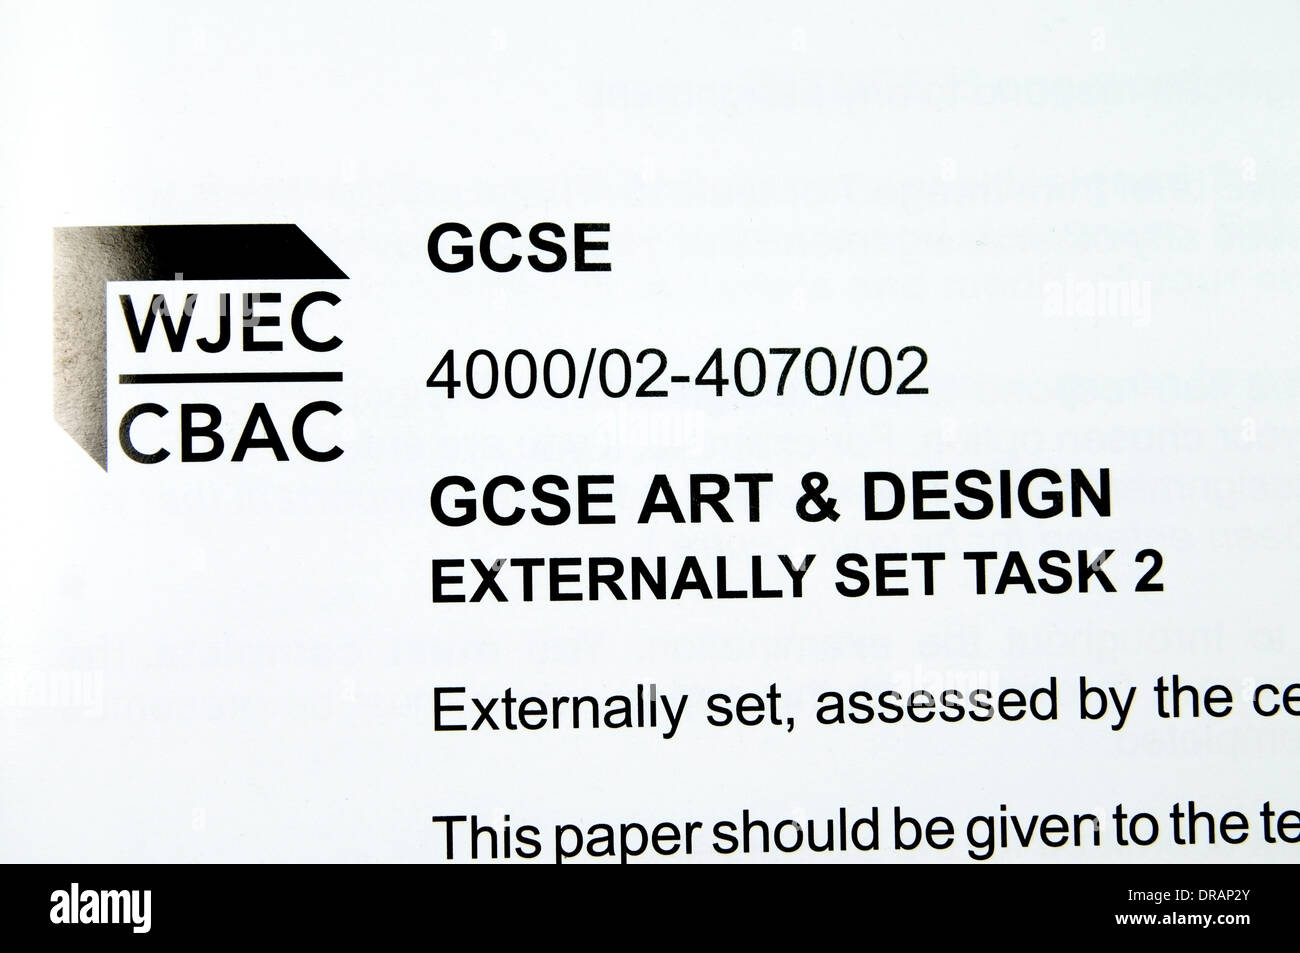 WJEC Arte e Design GCSE attività esterne foglio di informazioni Foto Stock